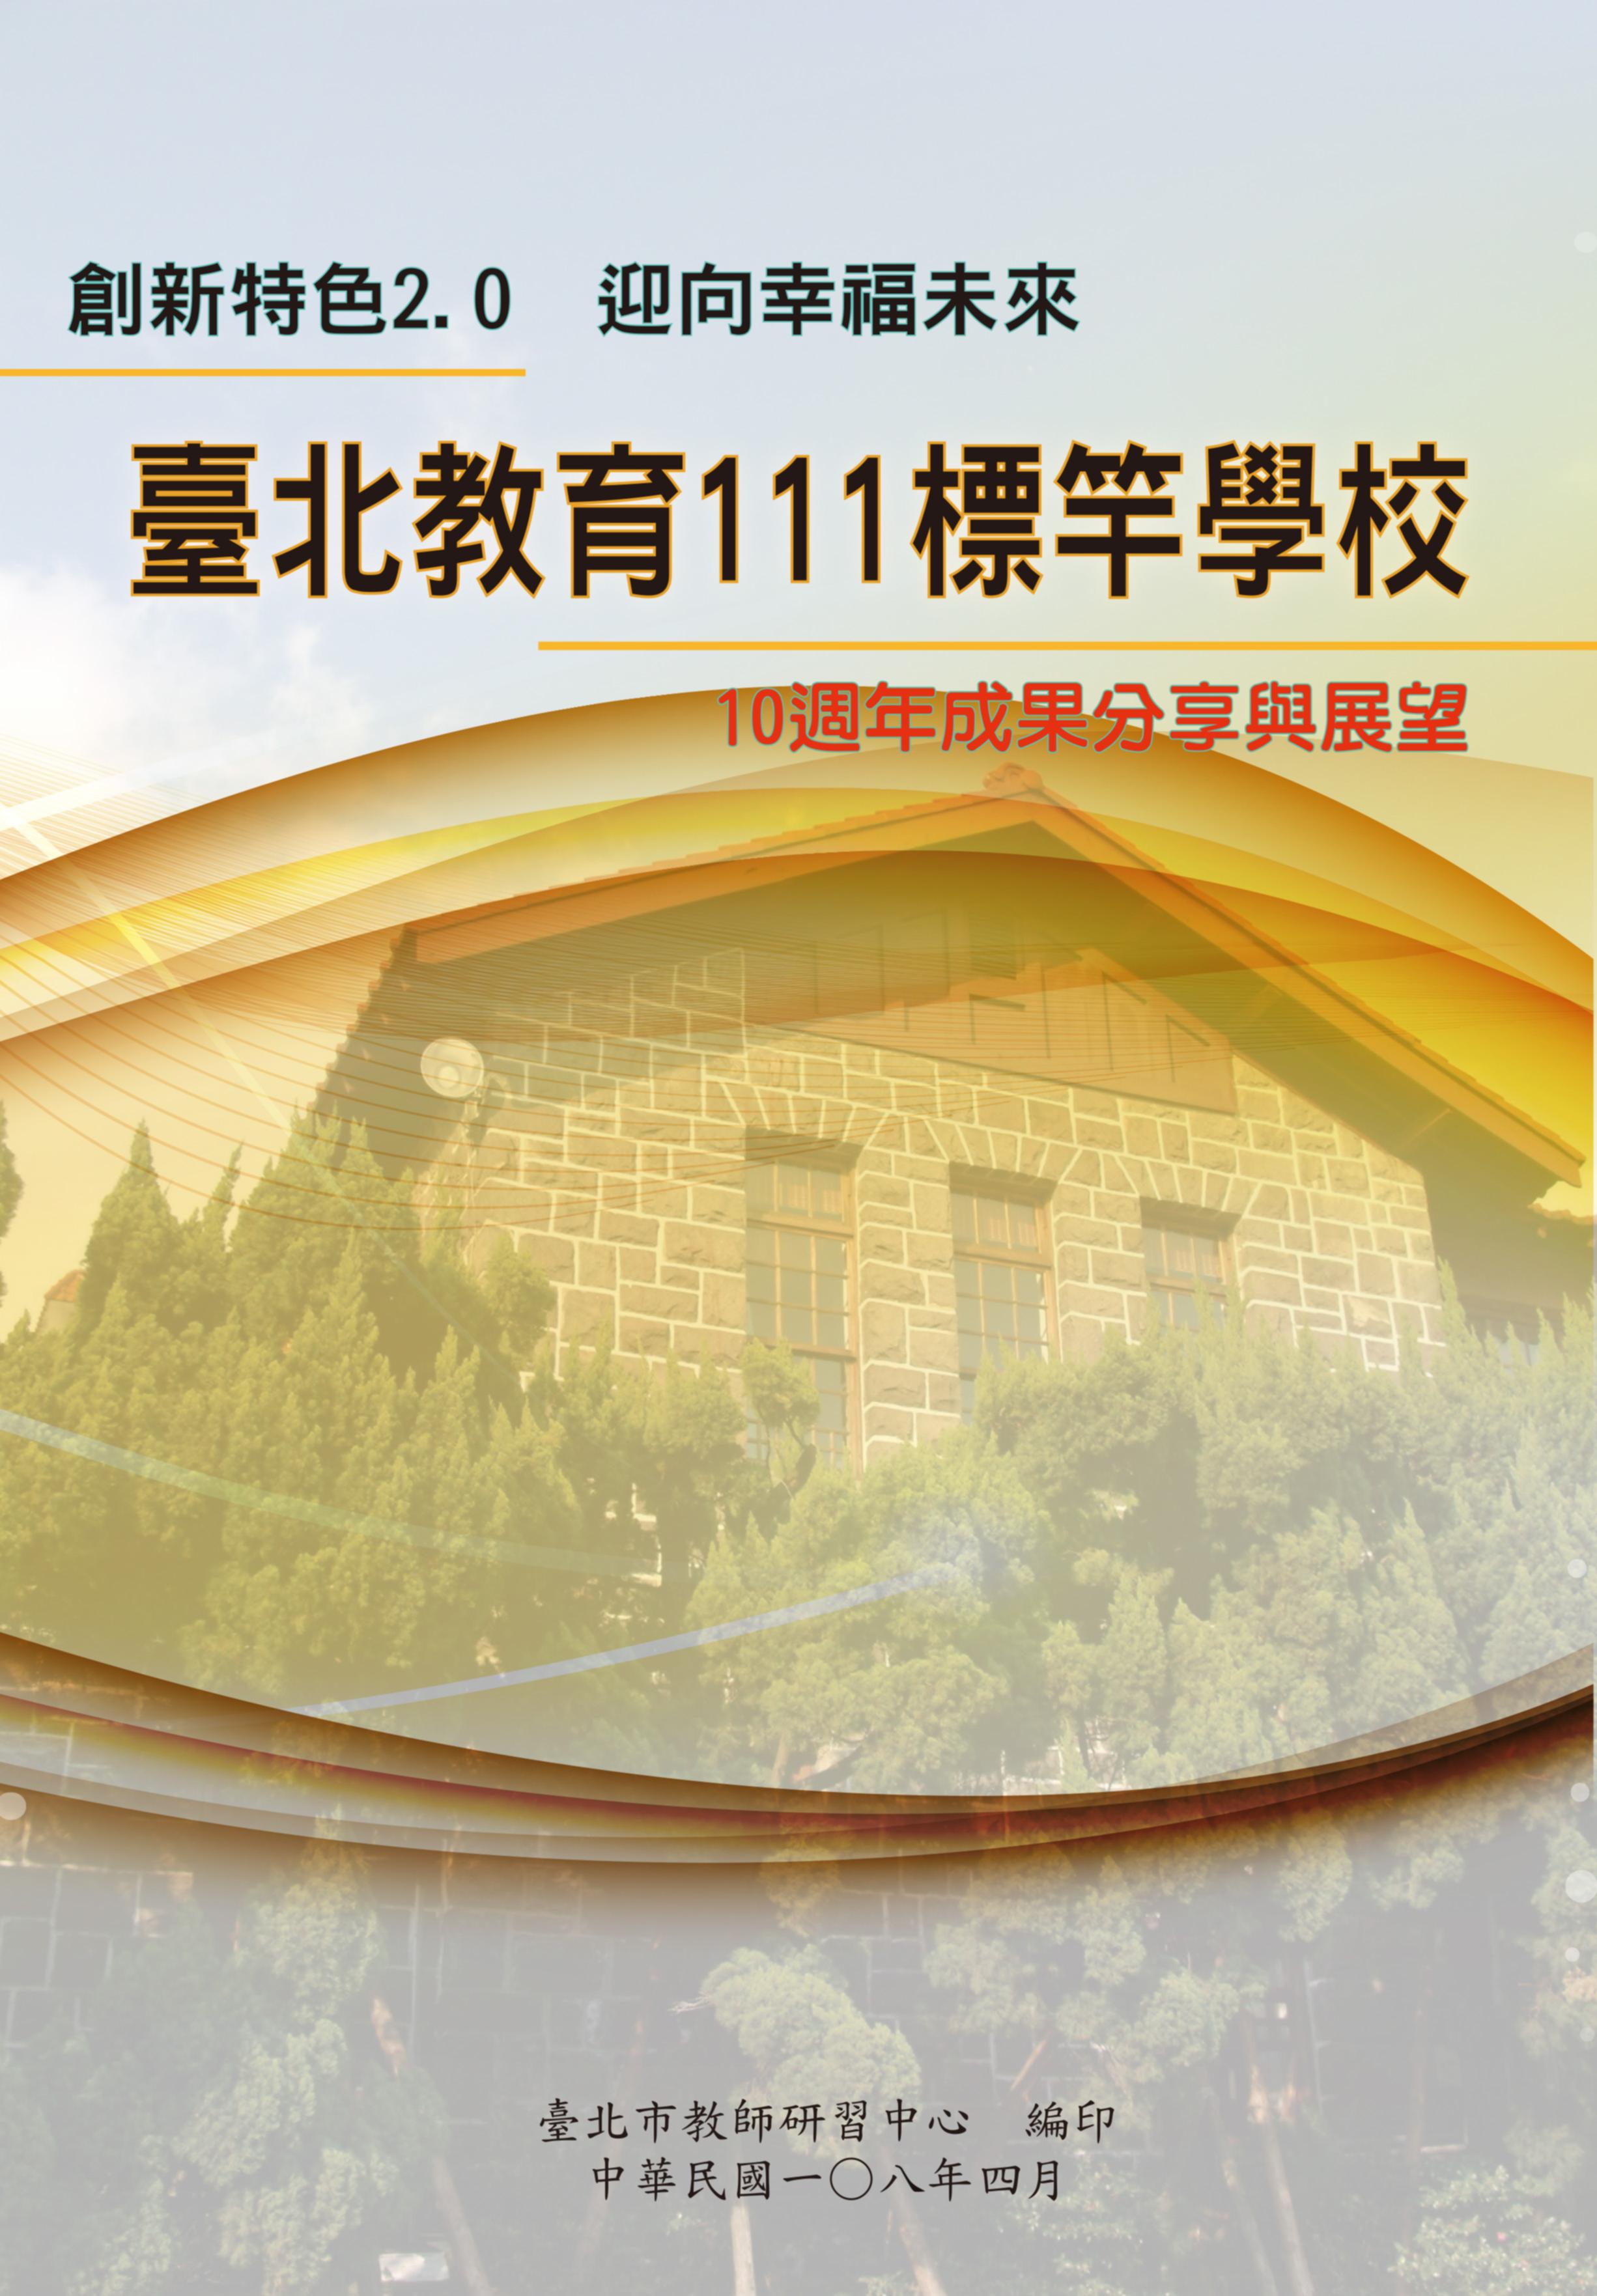 創新特色2.0 迎向幸福未來 107年度臺北教育111標竿學校-10週年成果分享與展望